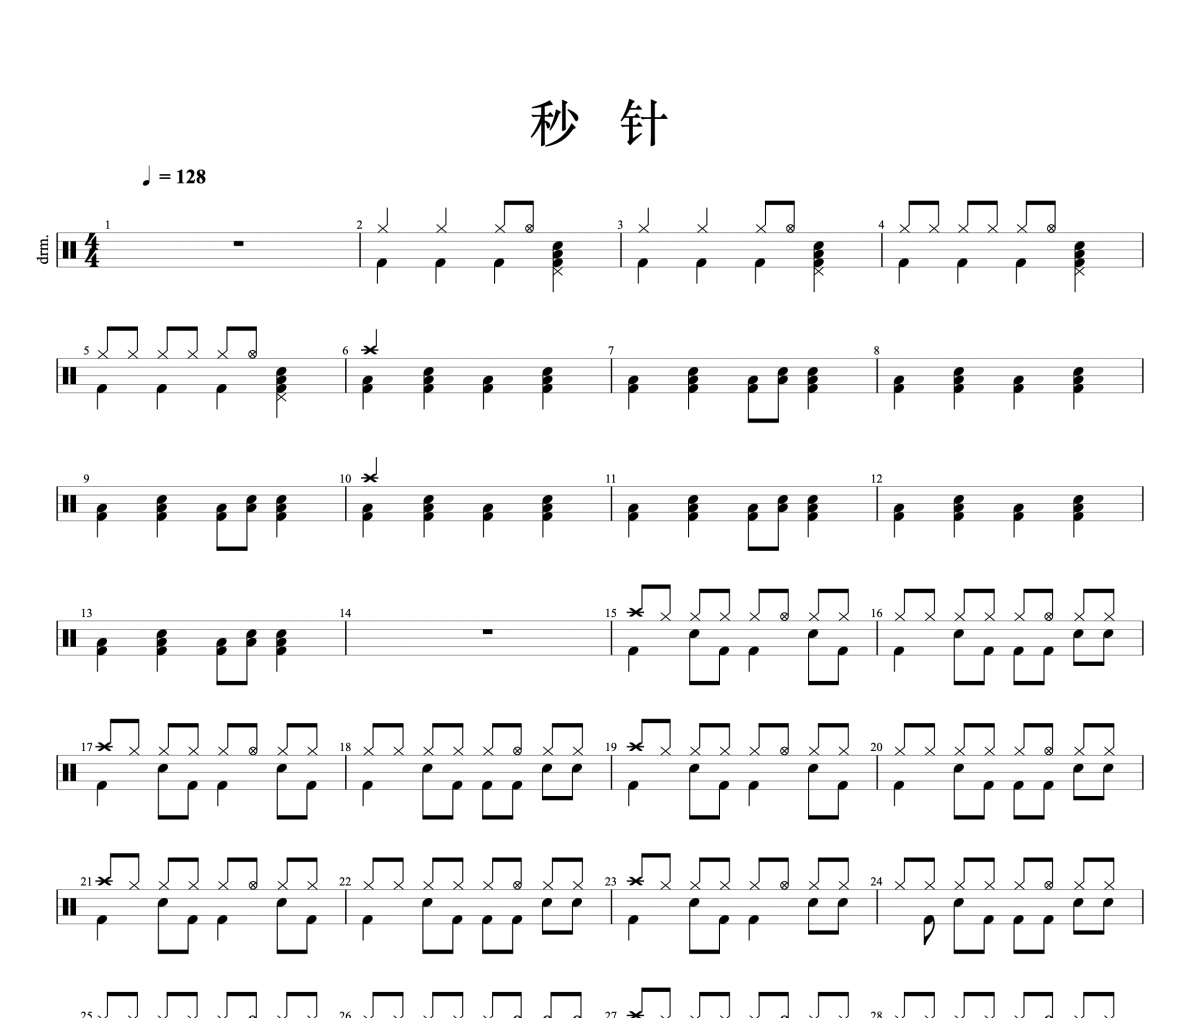 李克勤/王鹤野-秒针架子鼓谱爵士鼓曲谱